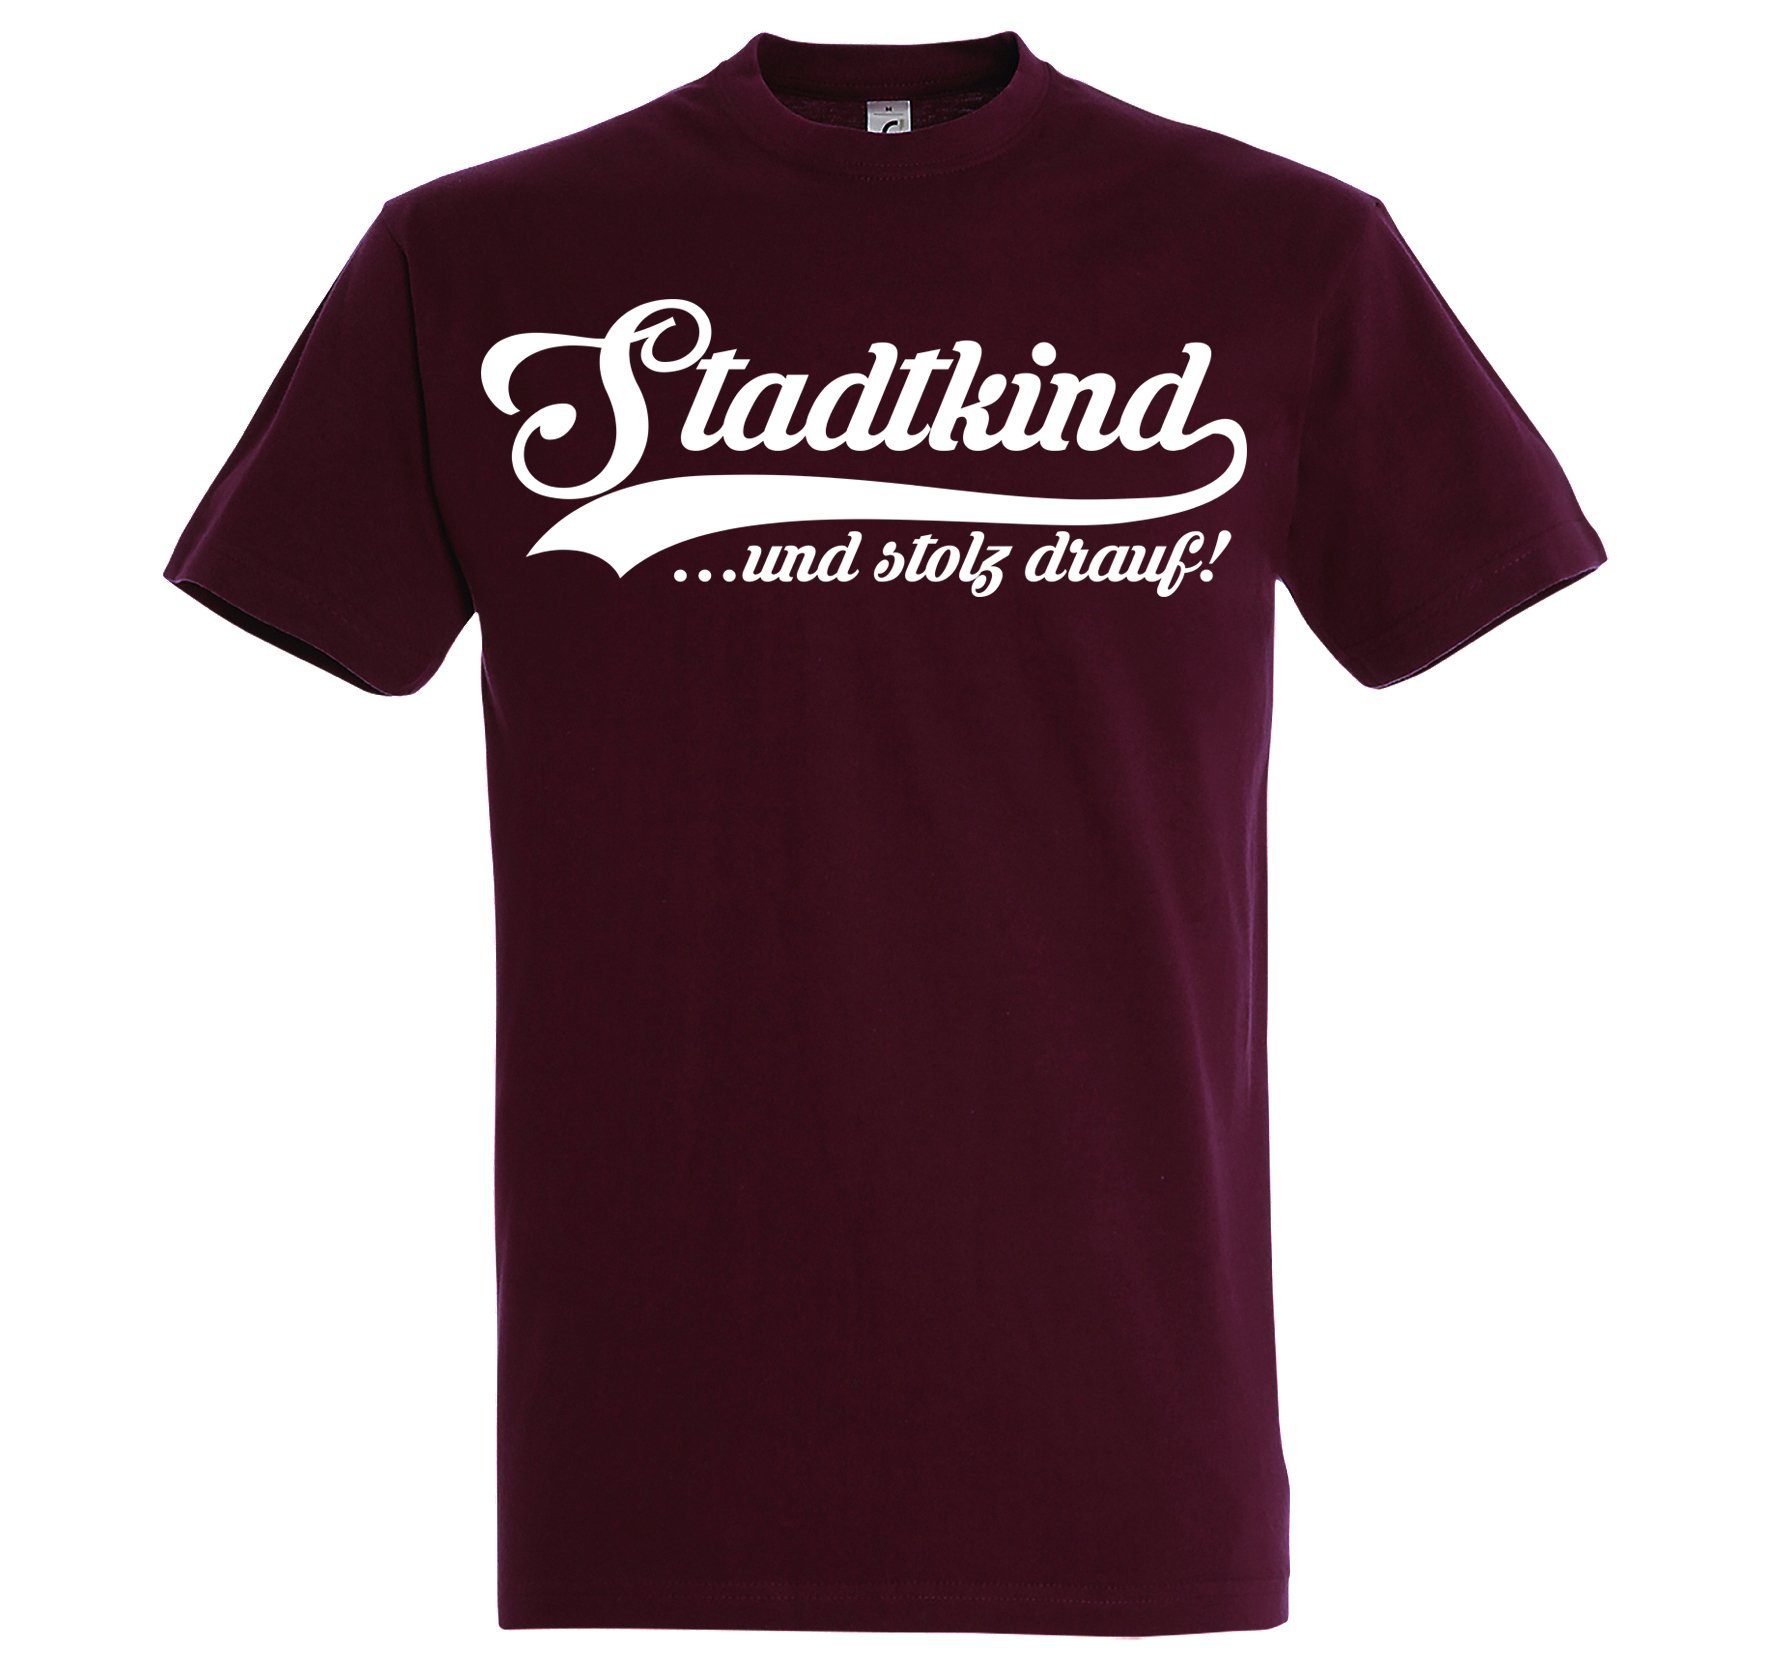 T-Shirt mit Shirt trendigen Herren Burgund Frontprint Youth Stadtkind Designz